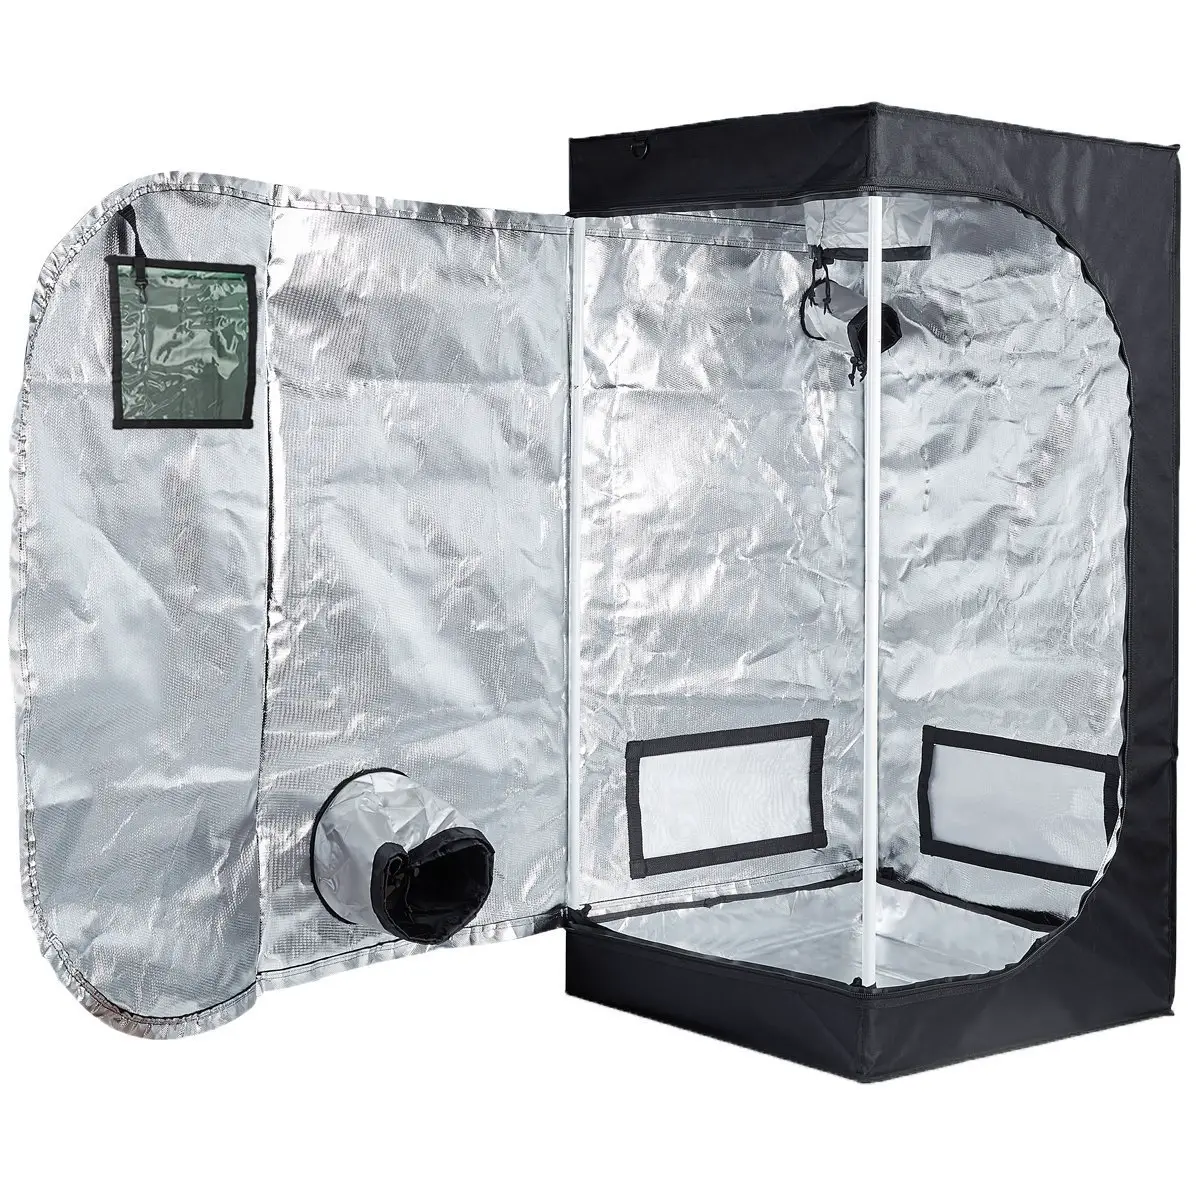 TopoLite 32 x 32 x 63” Inches Indoor Grow Tent Hydroponic Growing Dark Room